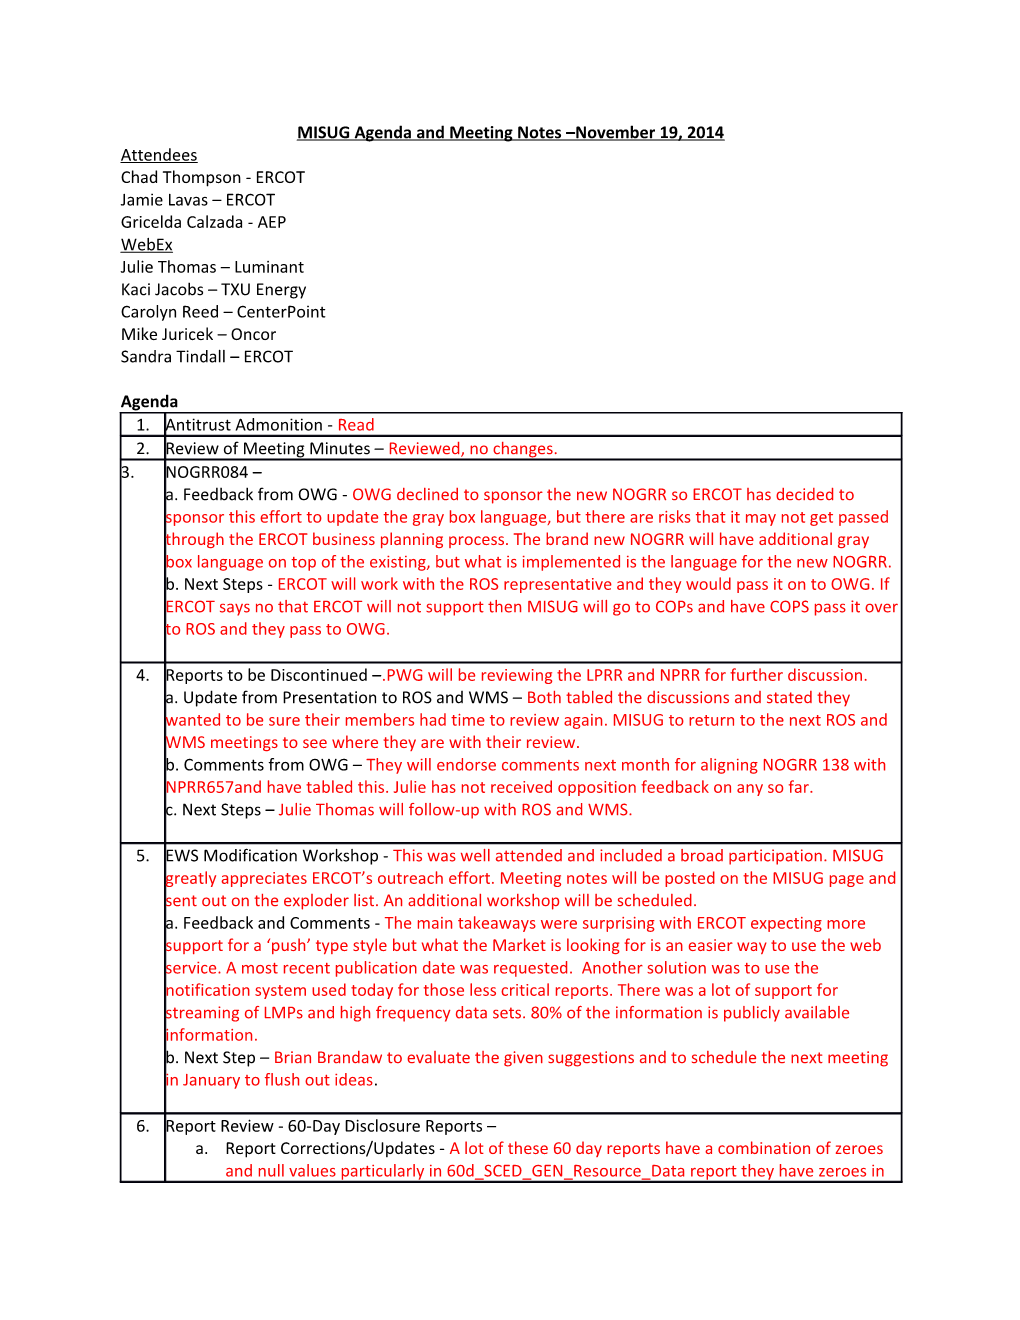 MISUG Agenda and Meeting Notes November 19, 2014